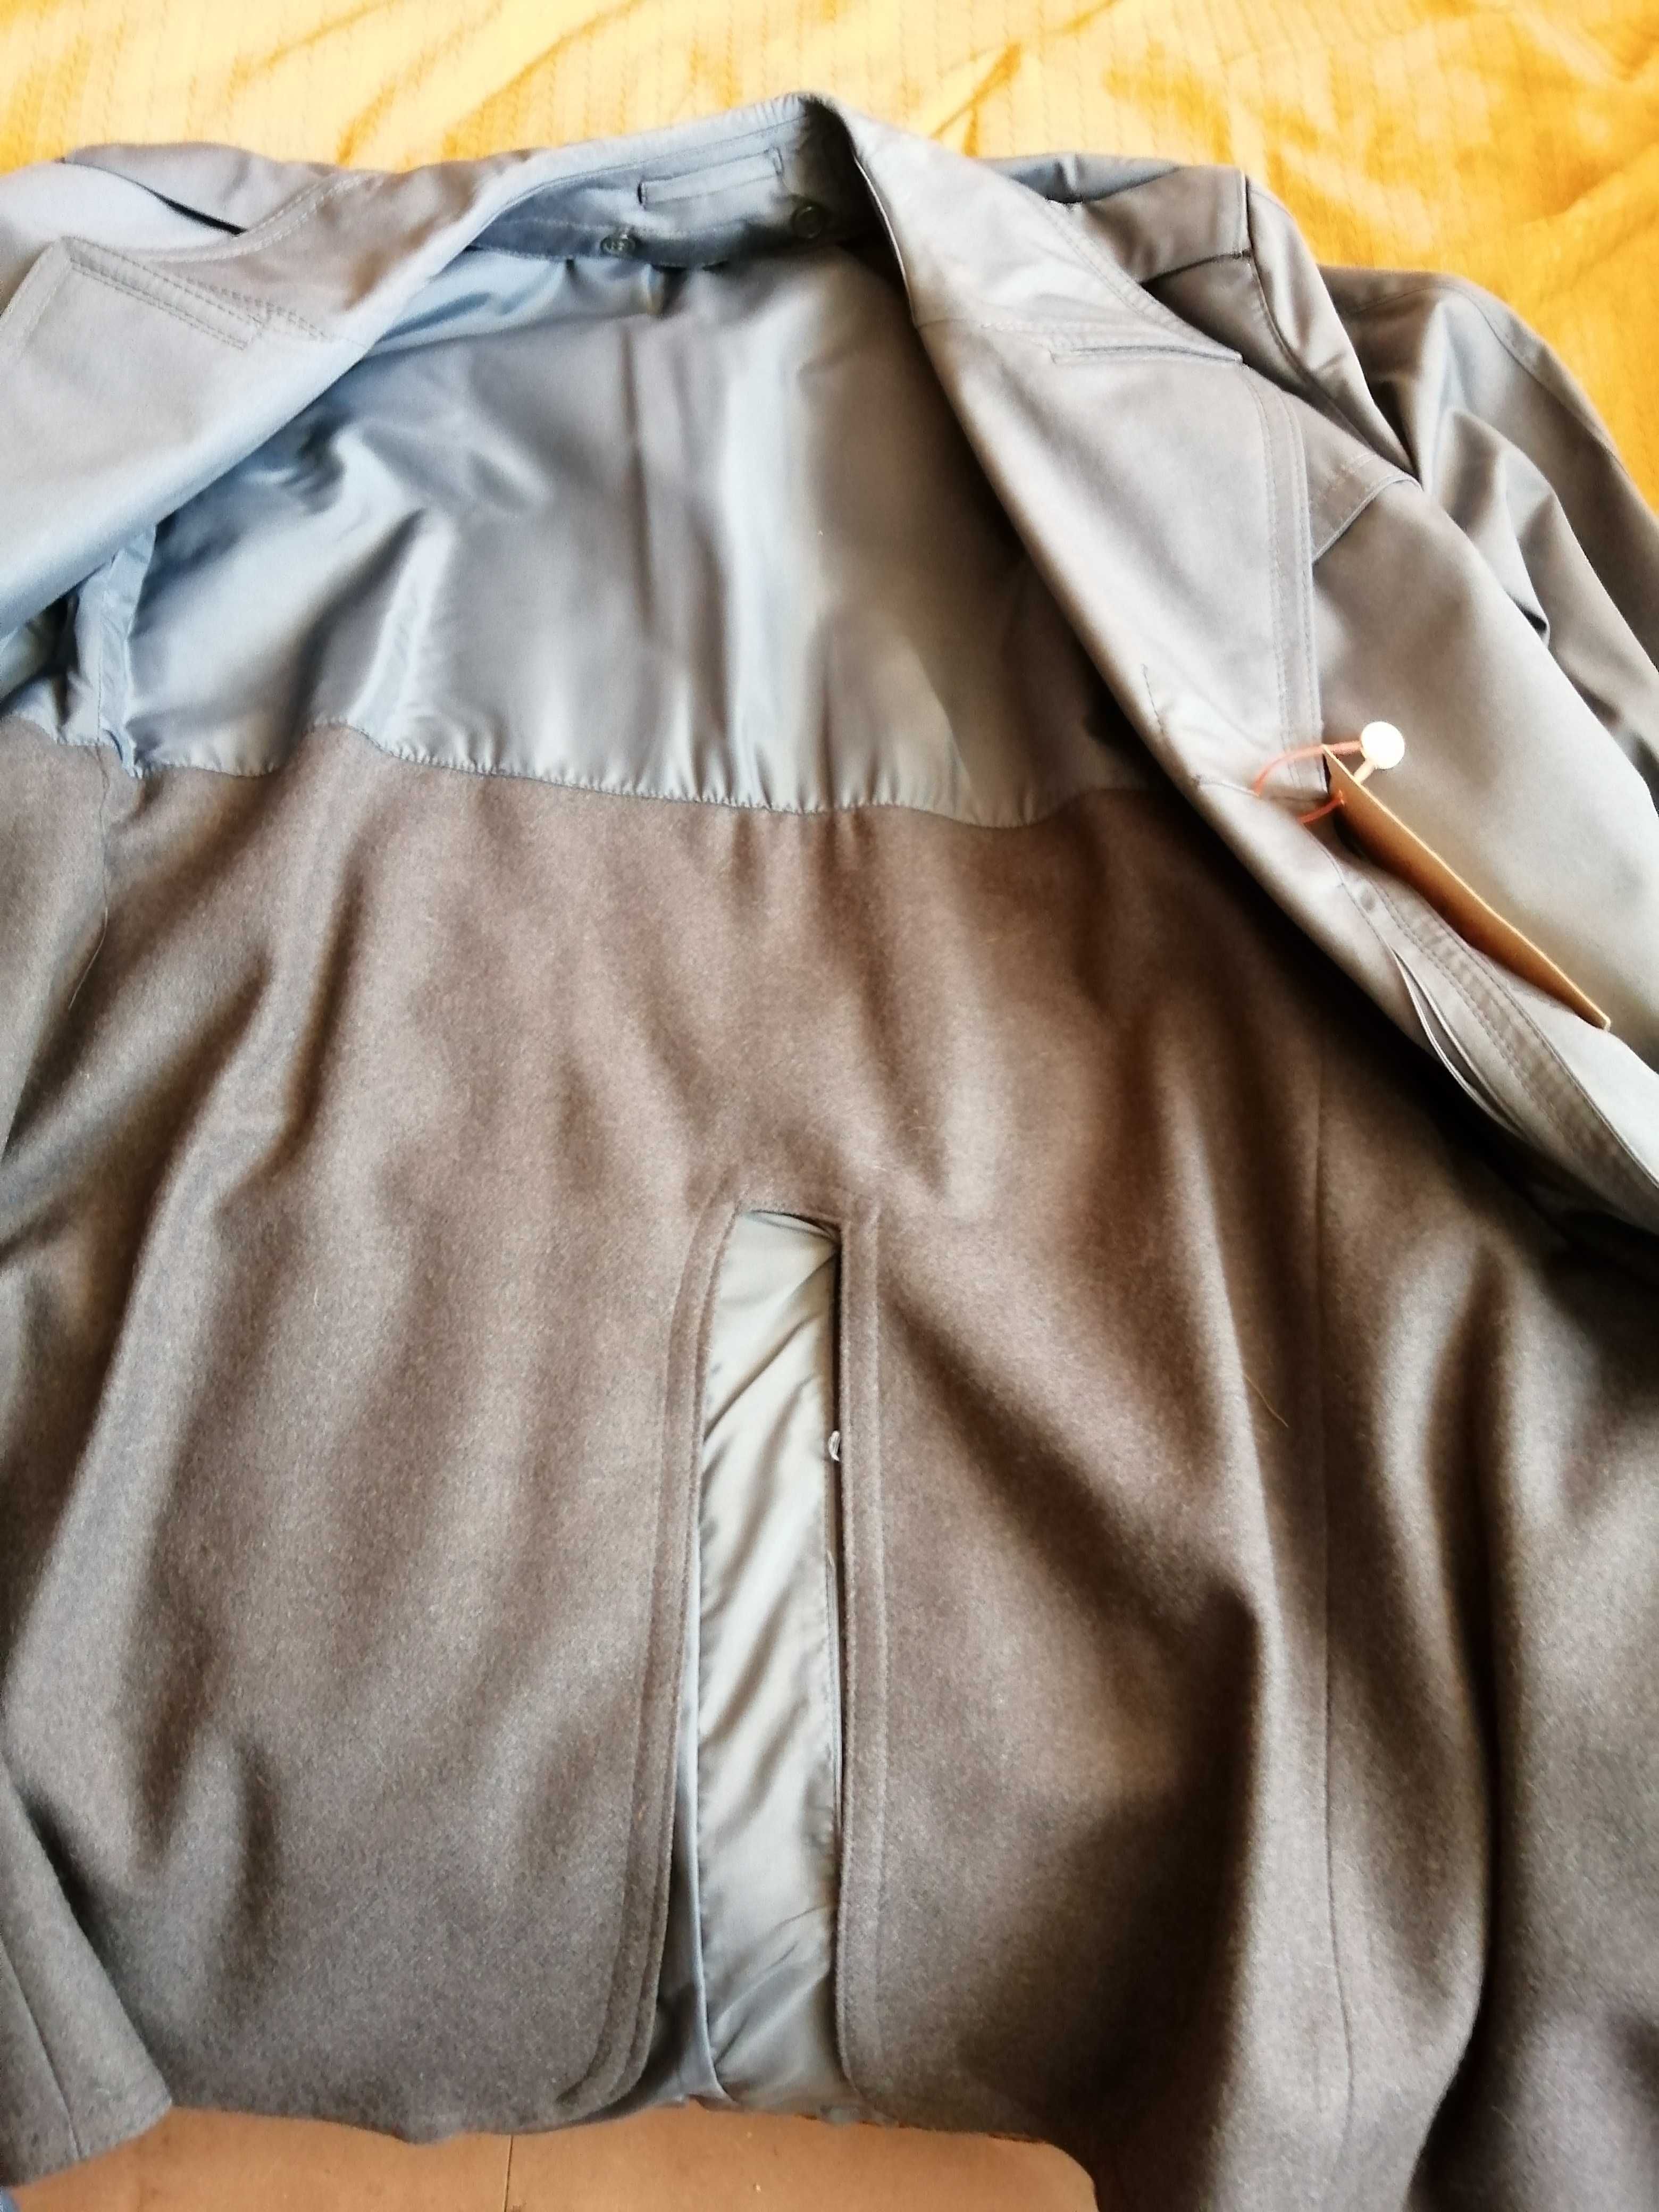 Milicyjny płaszcz letni, nigdy nieużywany (Stare mundury)